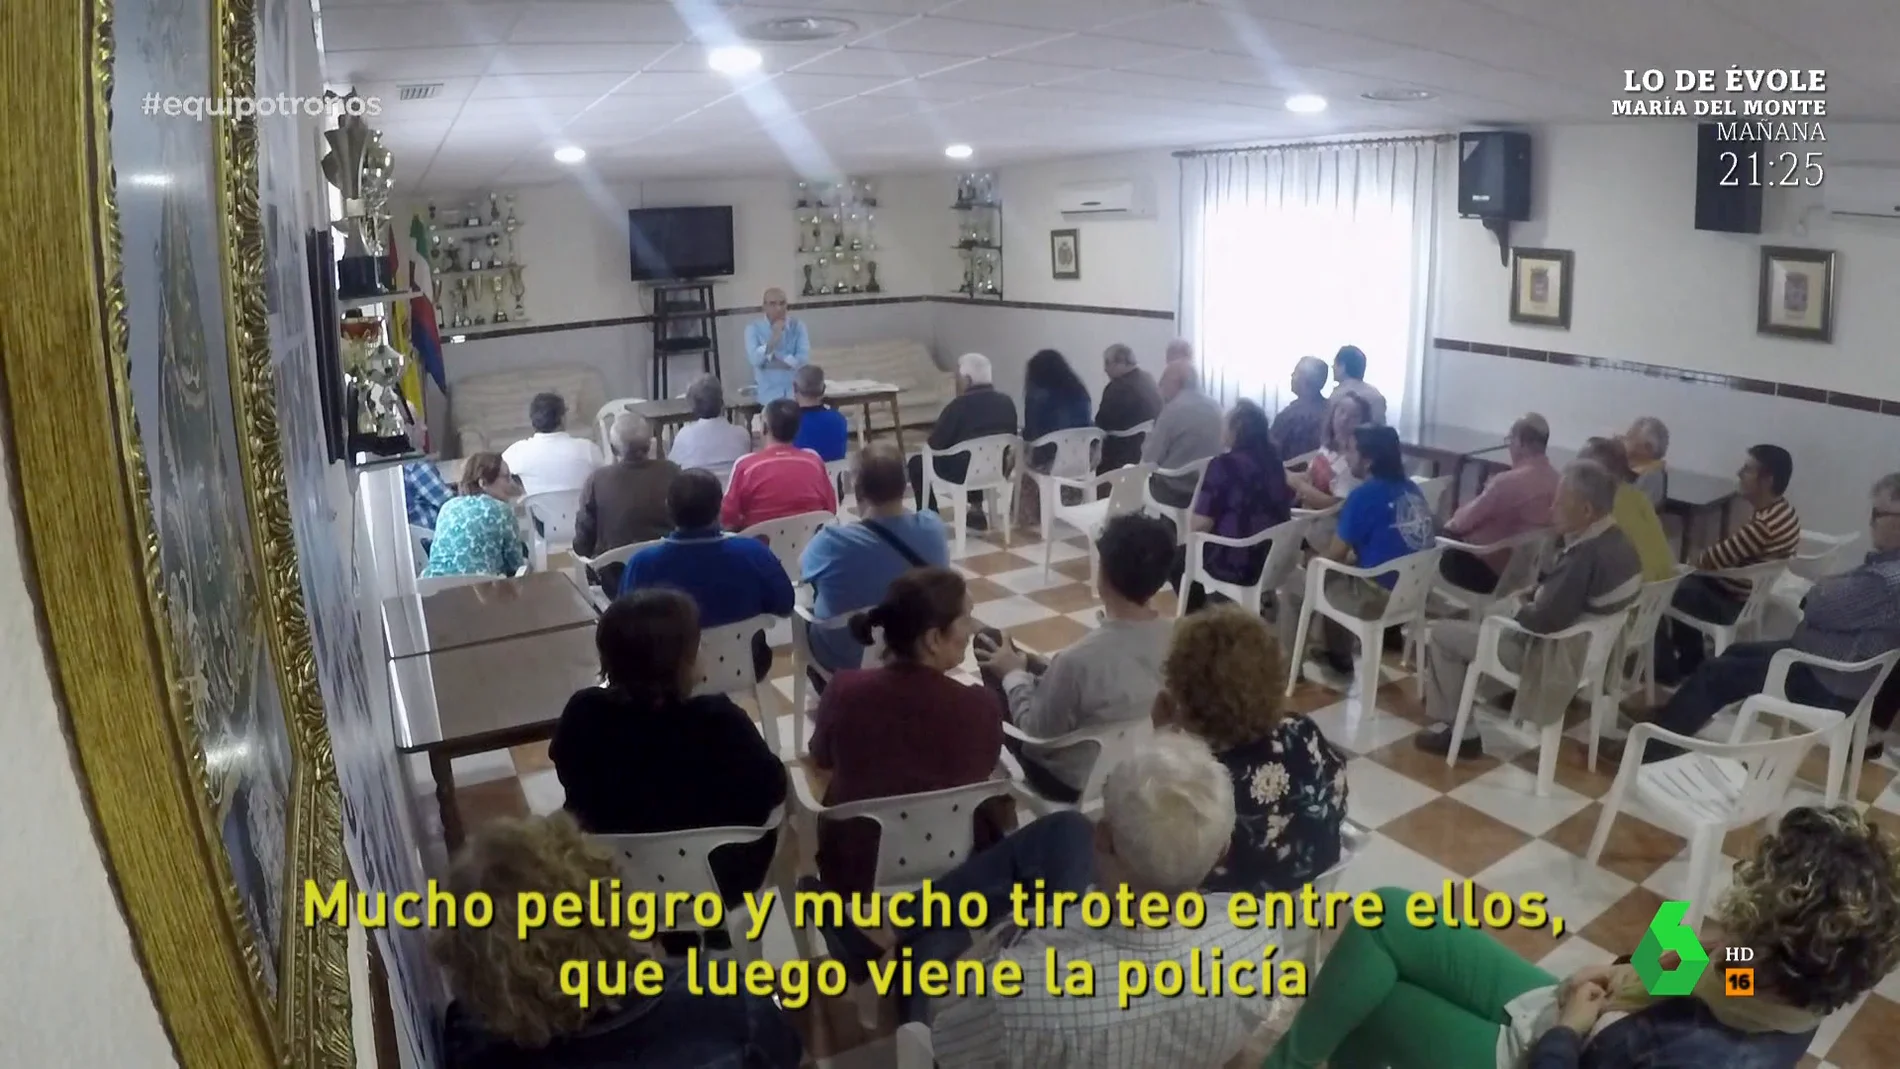 Los escalofriantes testimonios de unos vecinos de Linares atemorizados por un clan familiar: "Todo el mundo les tiene miedo"